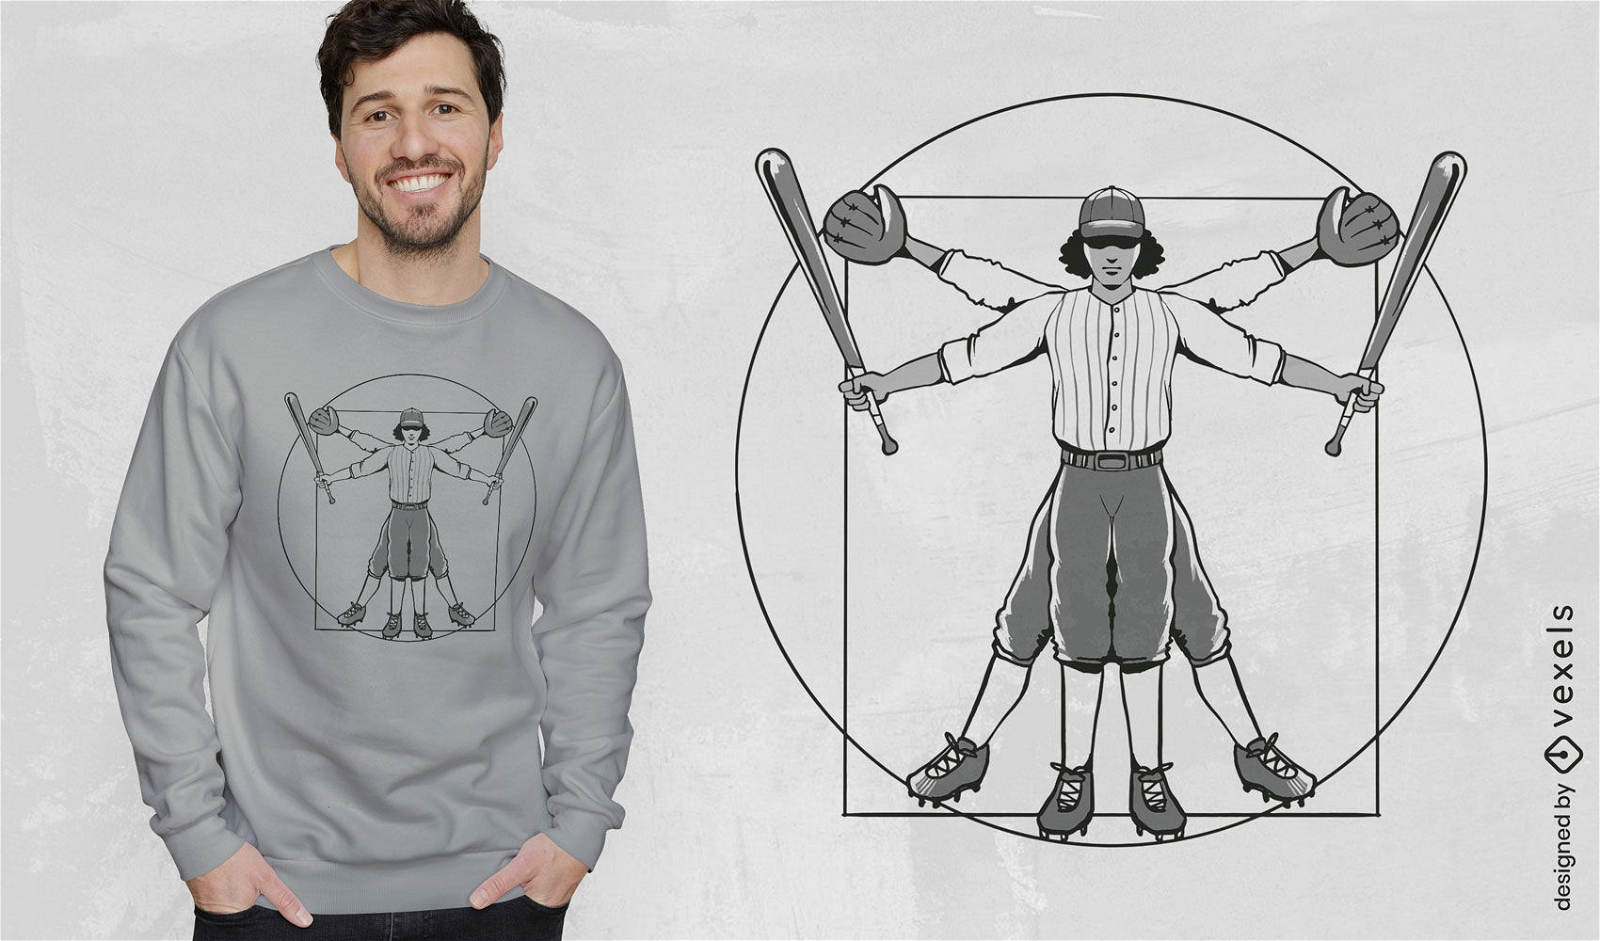 Creative baseball t-shirt design